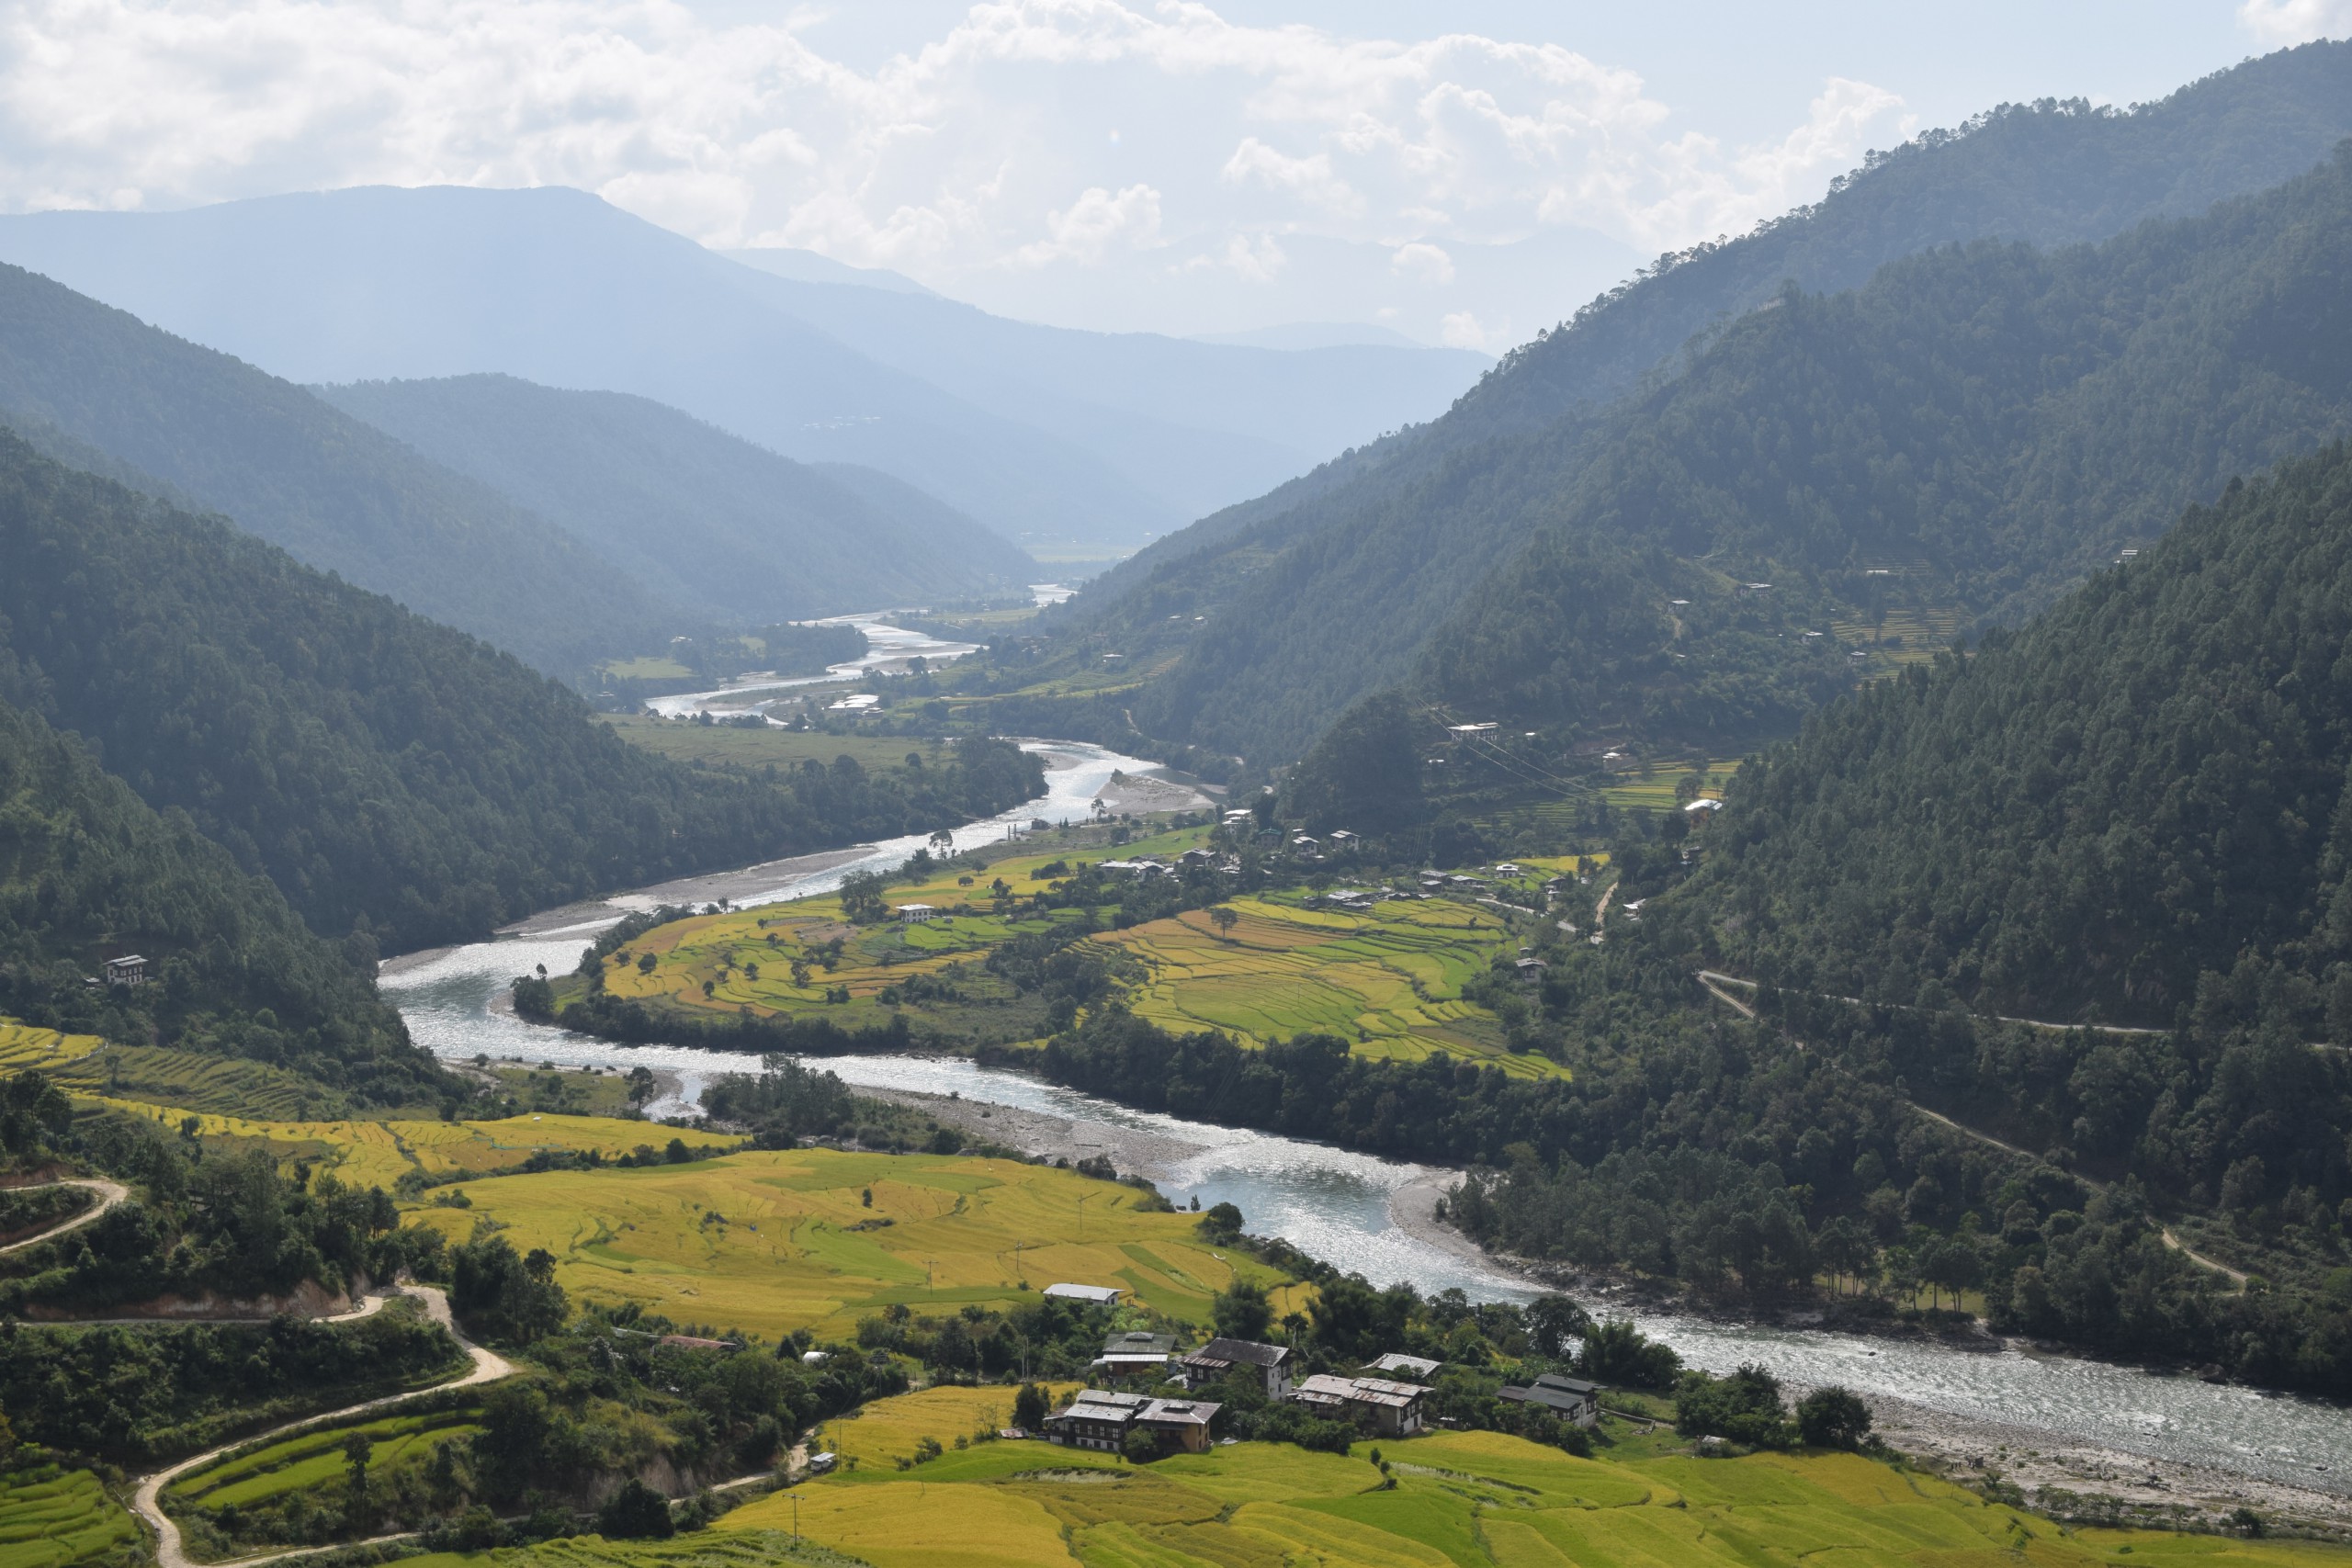 Wangdue Phodrang Valley